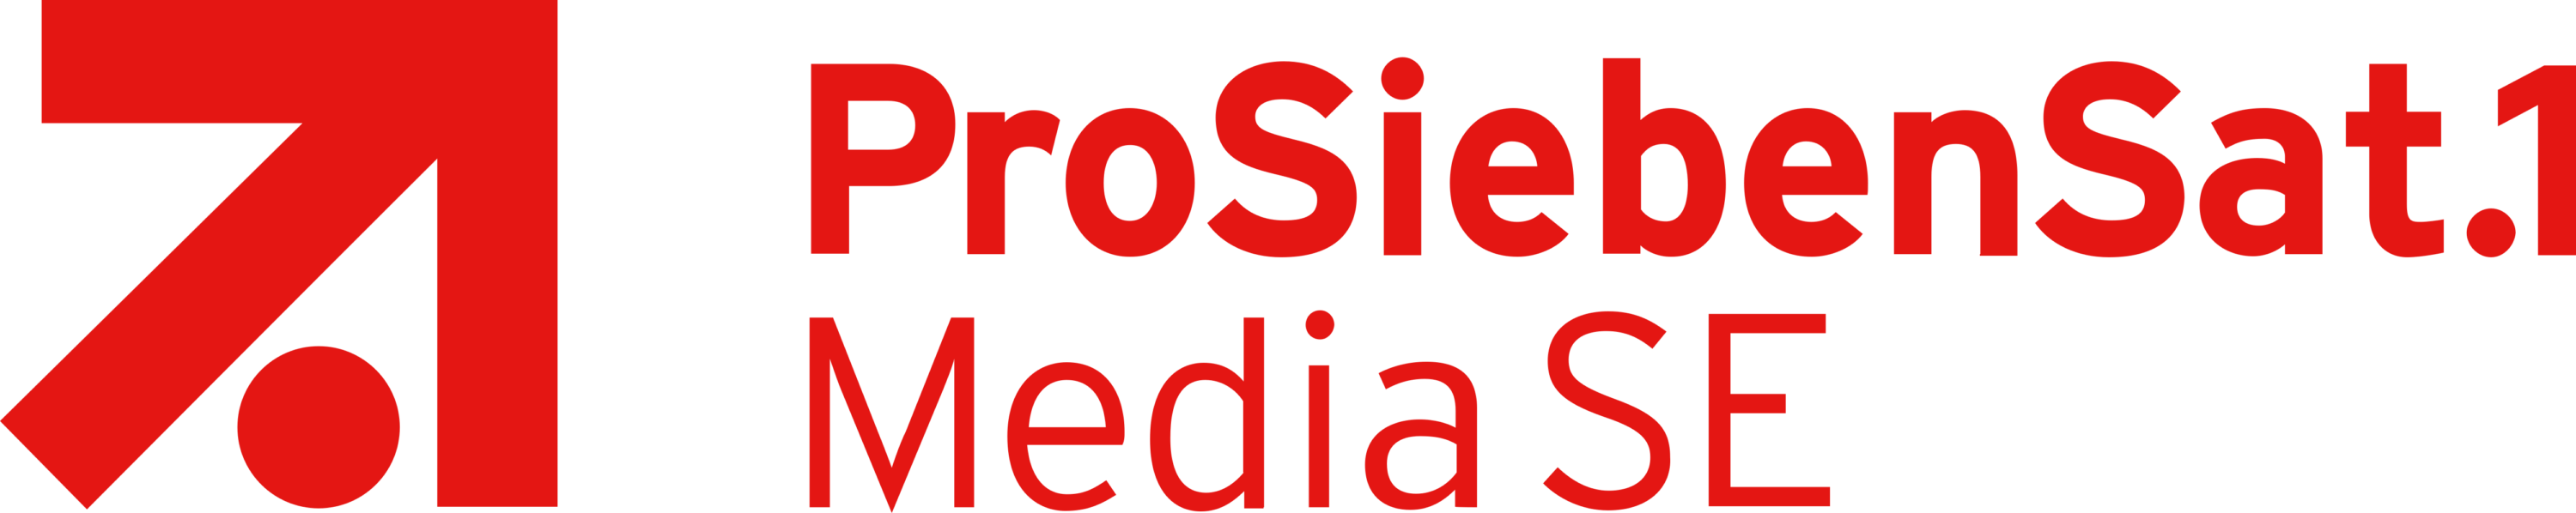 ProSiebenSat1 Media SE Logo